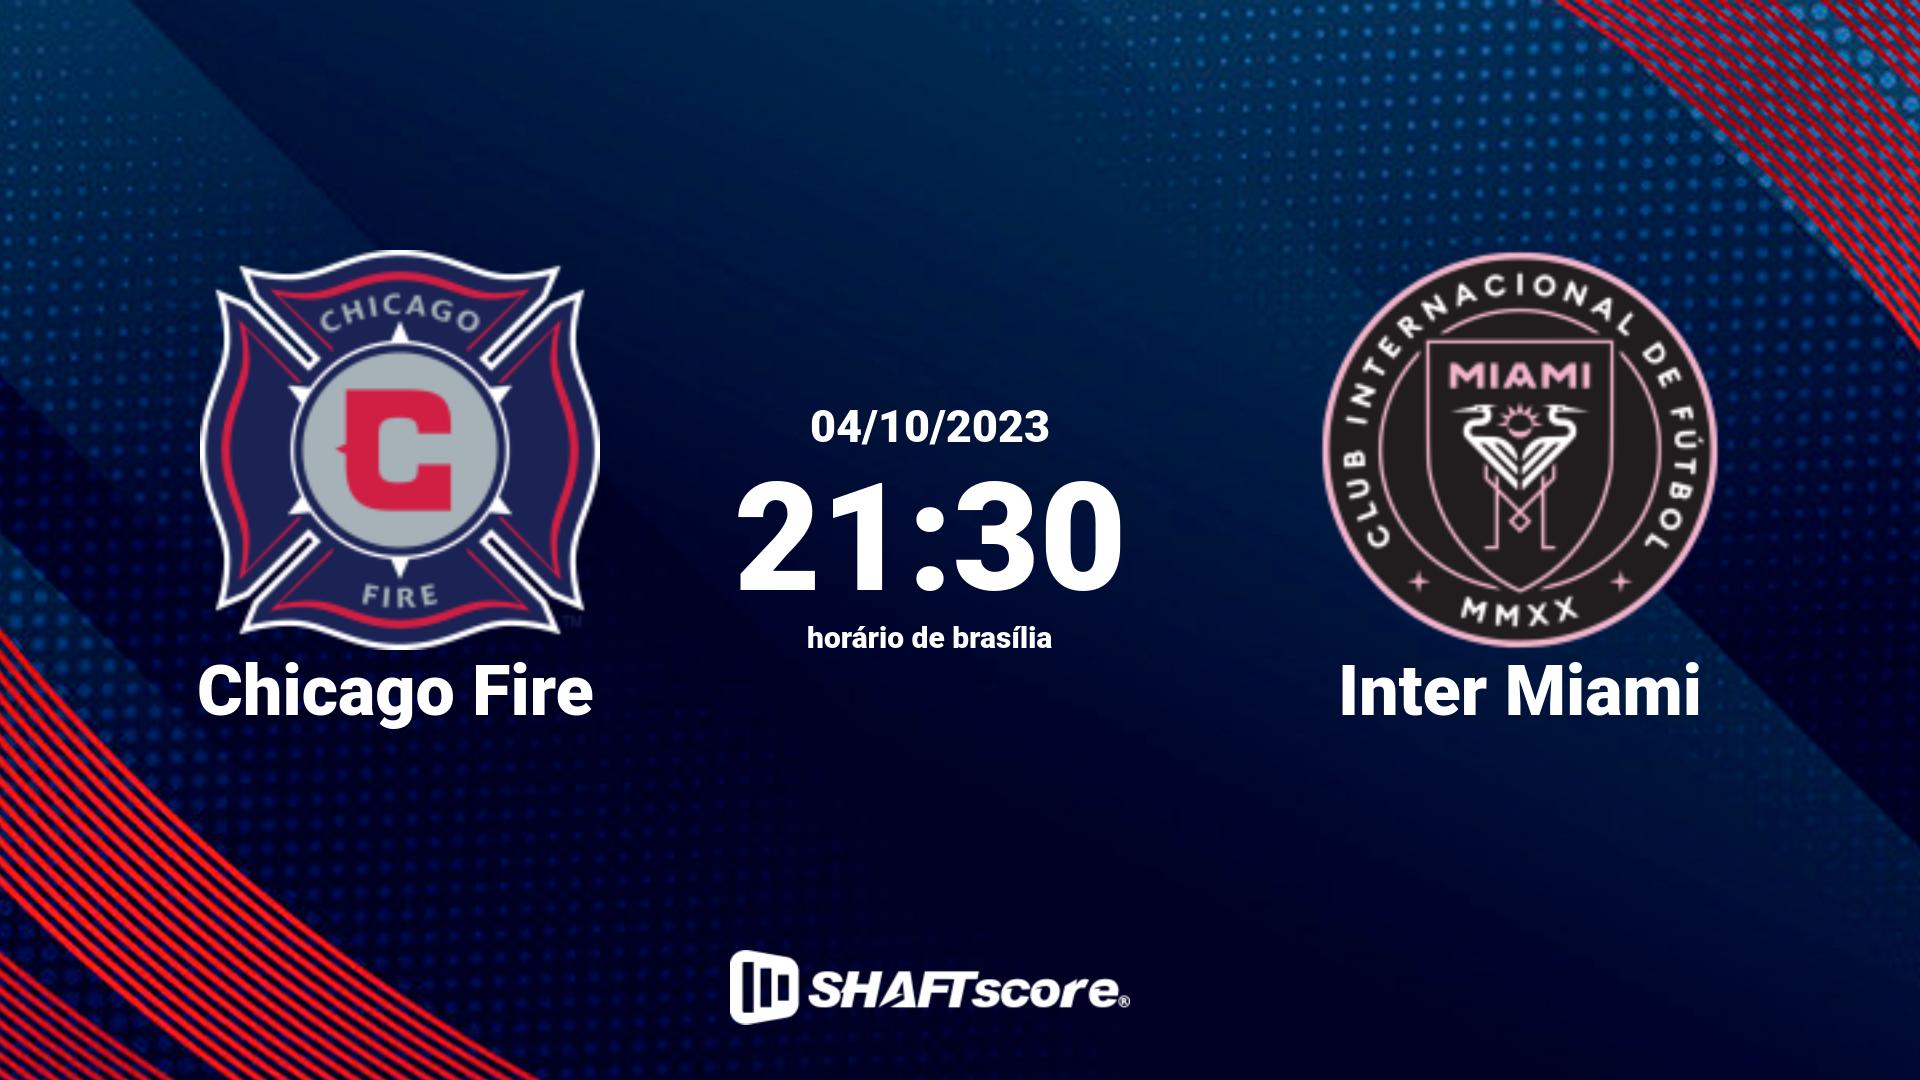 Estatísticas do jogo Chicago Fire vs Inter Miami 04.10 21:30